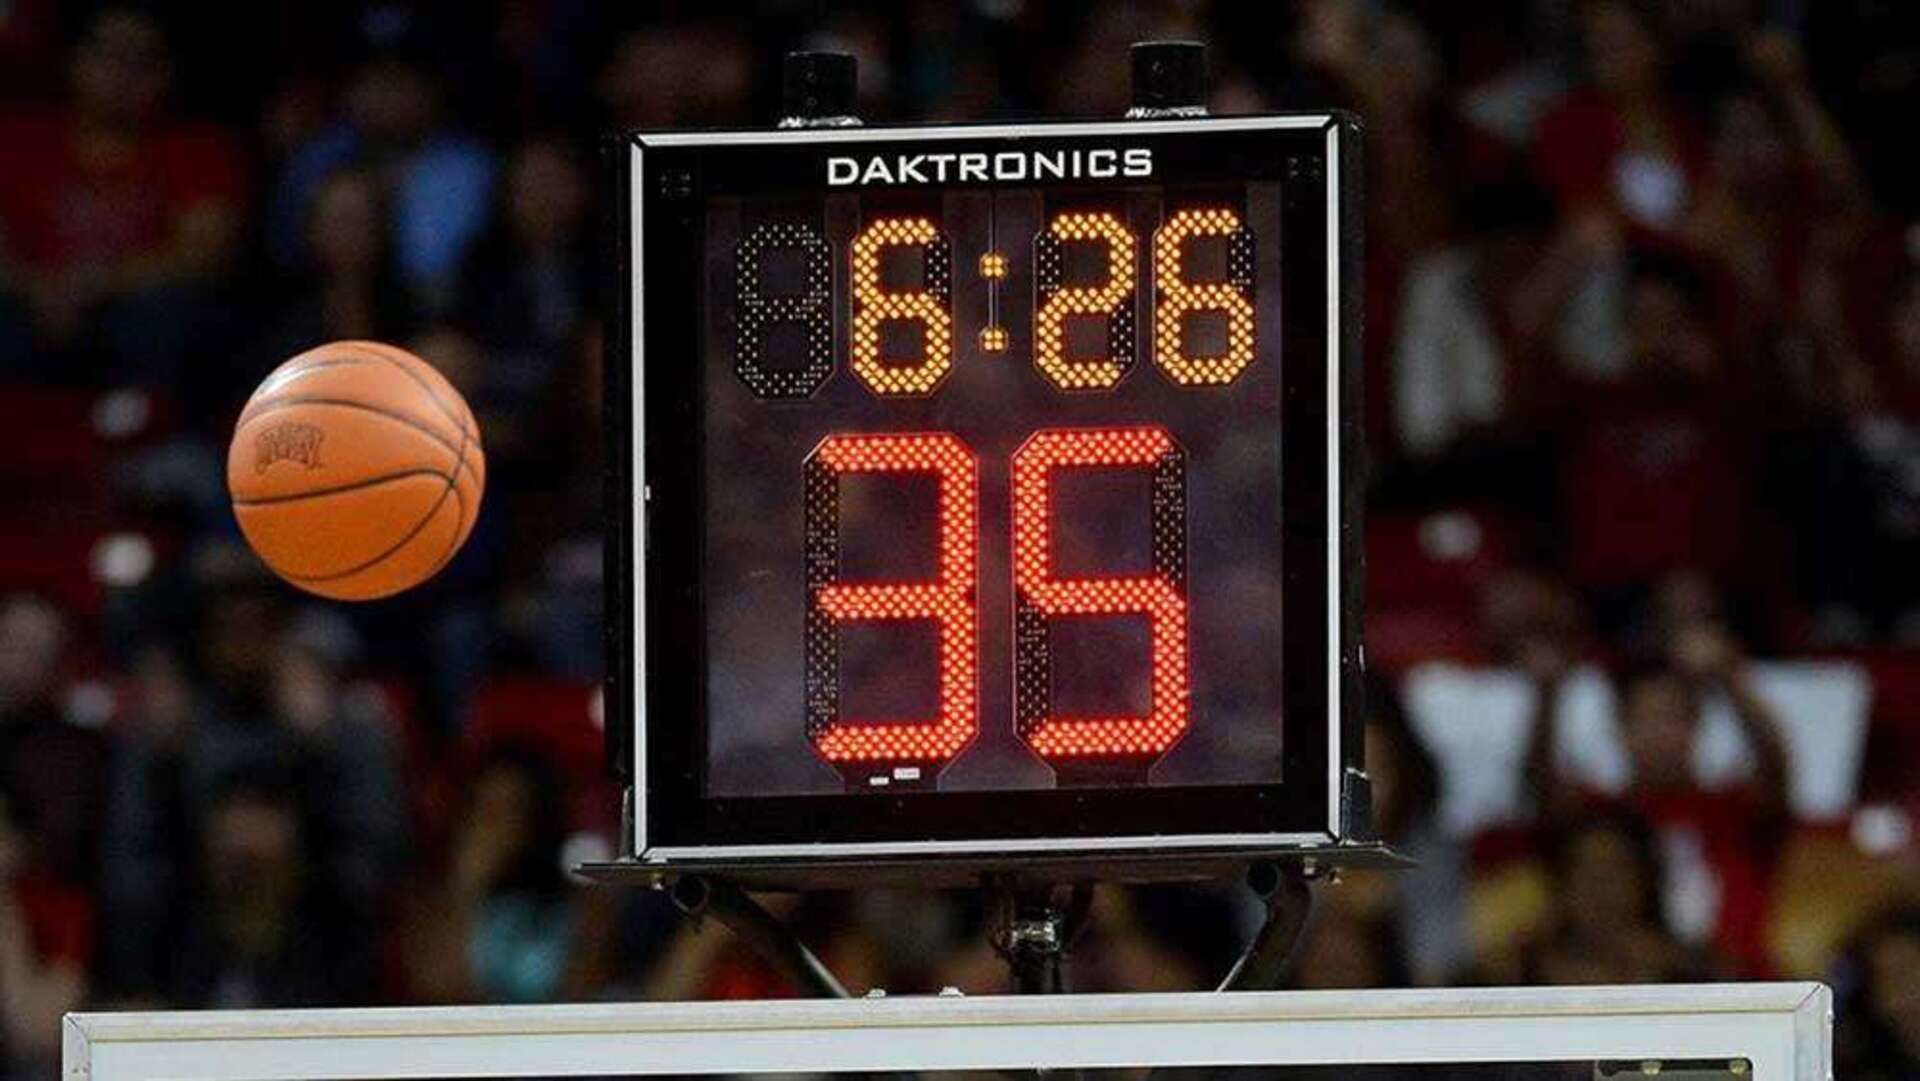 Баскетбол игра сколько минут